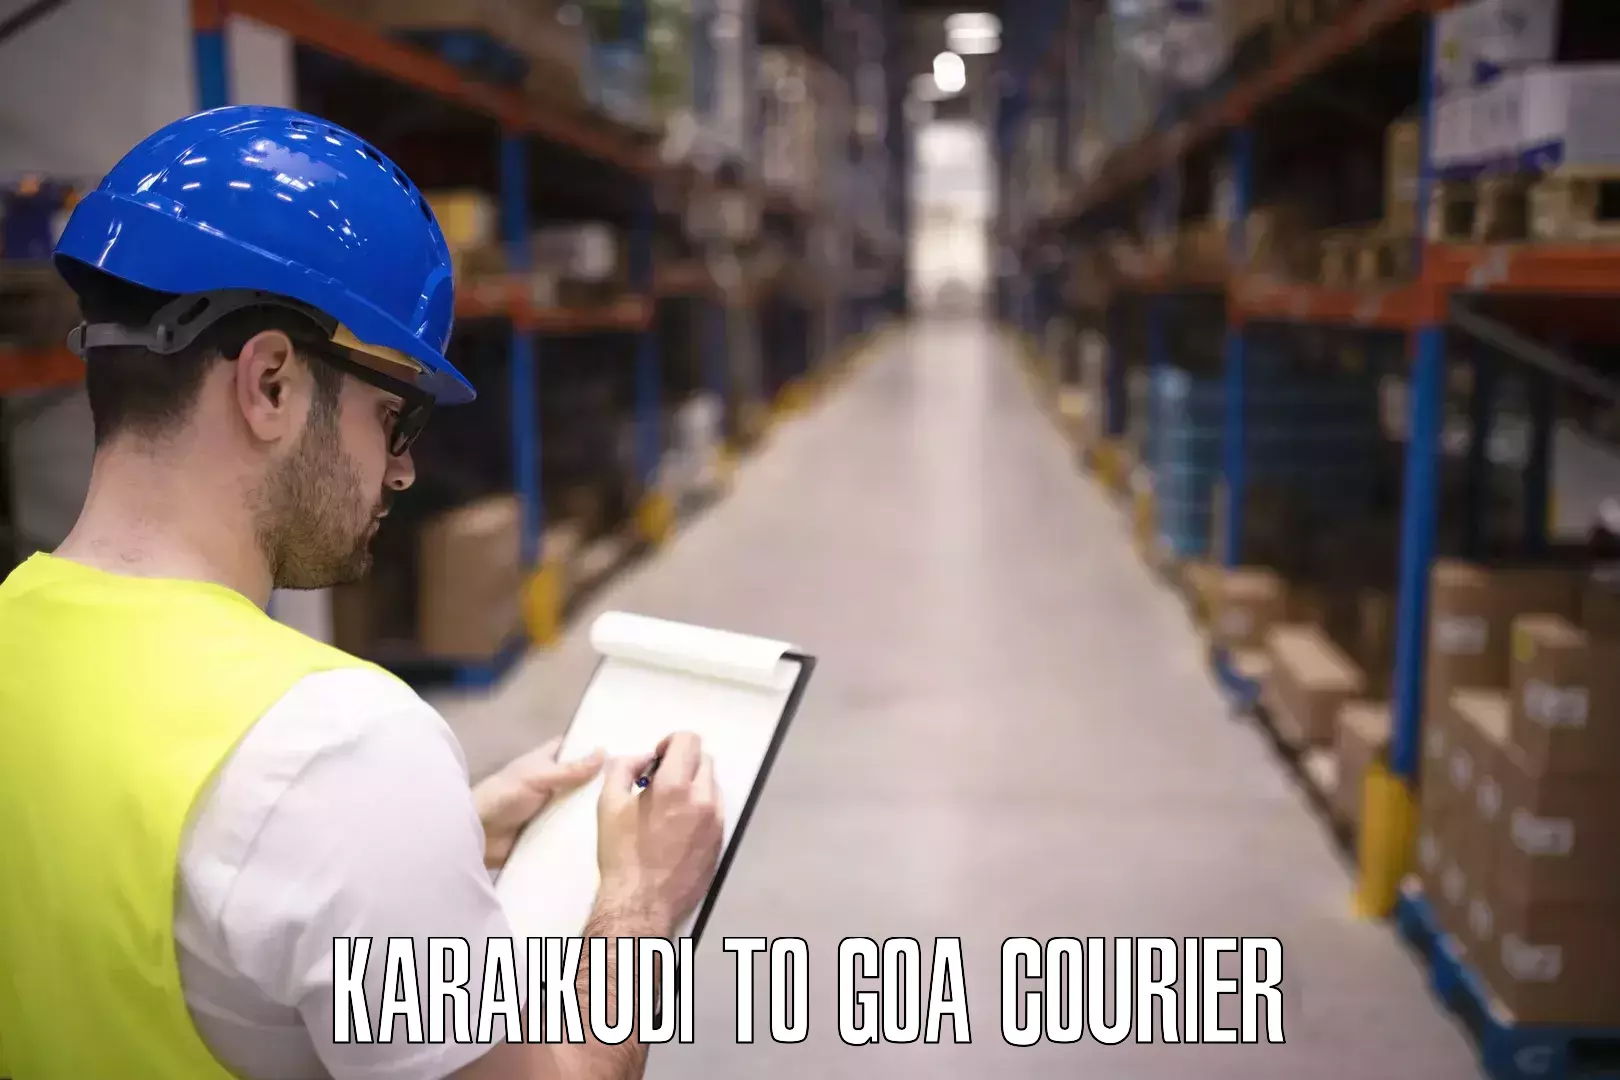 Luggage delivery optimization Karaikudi to South Goa